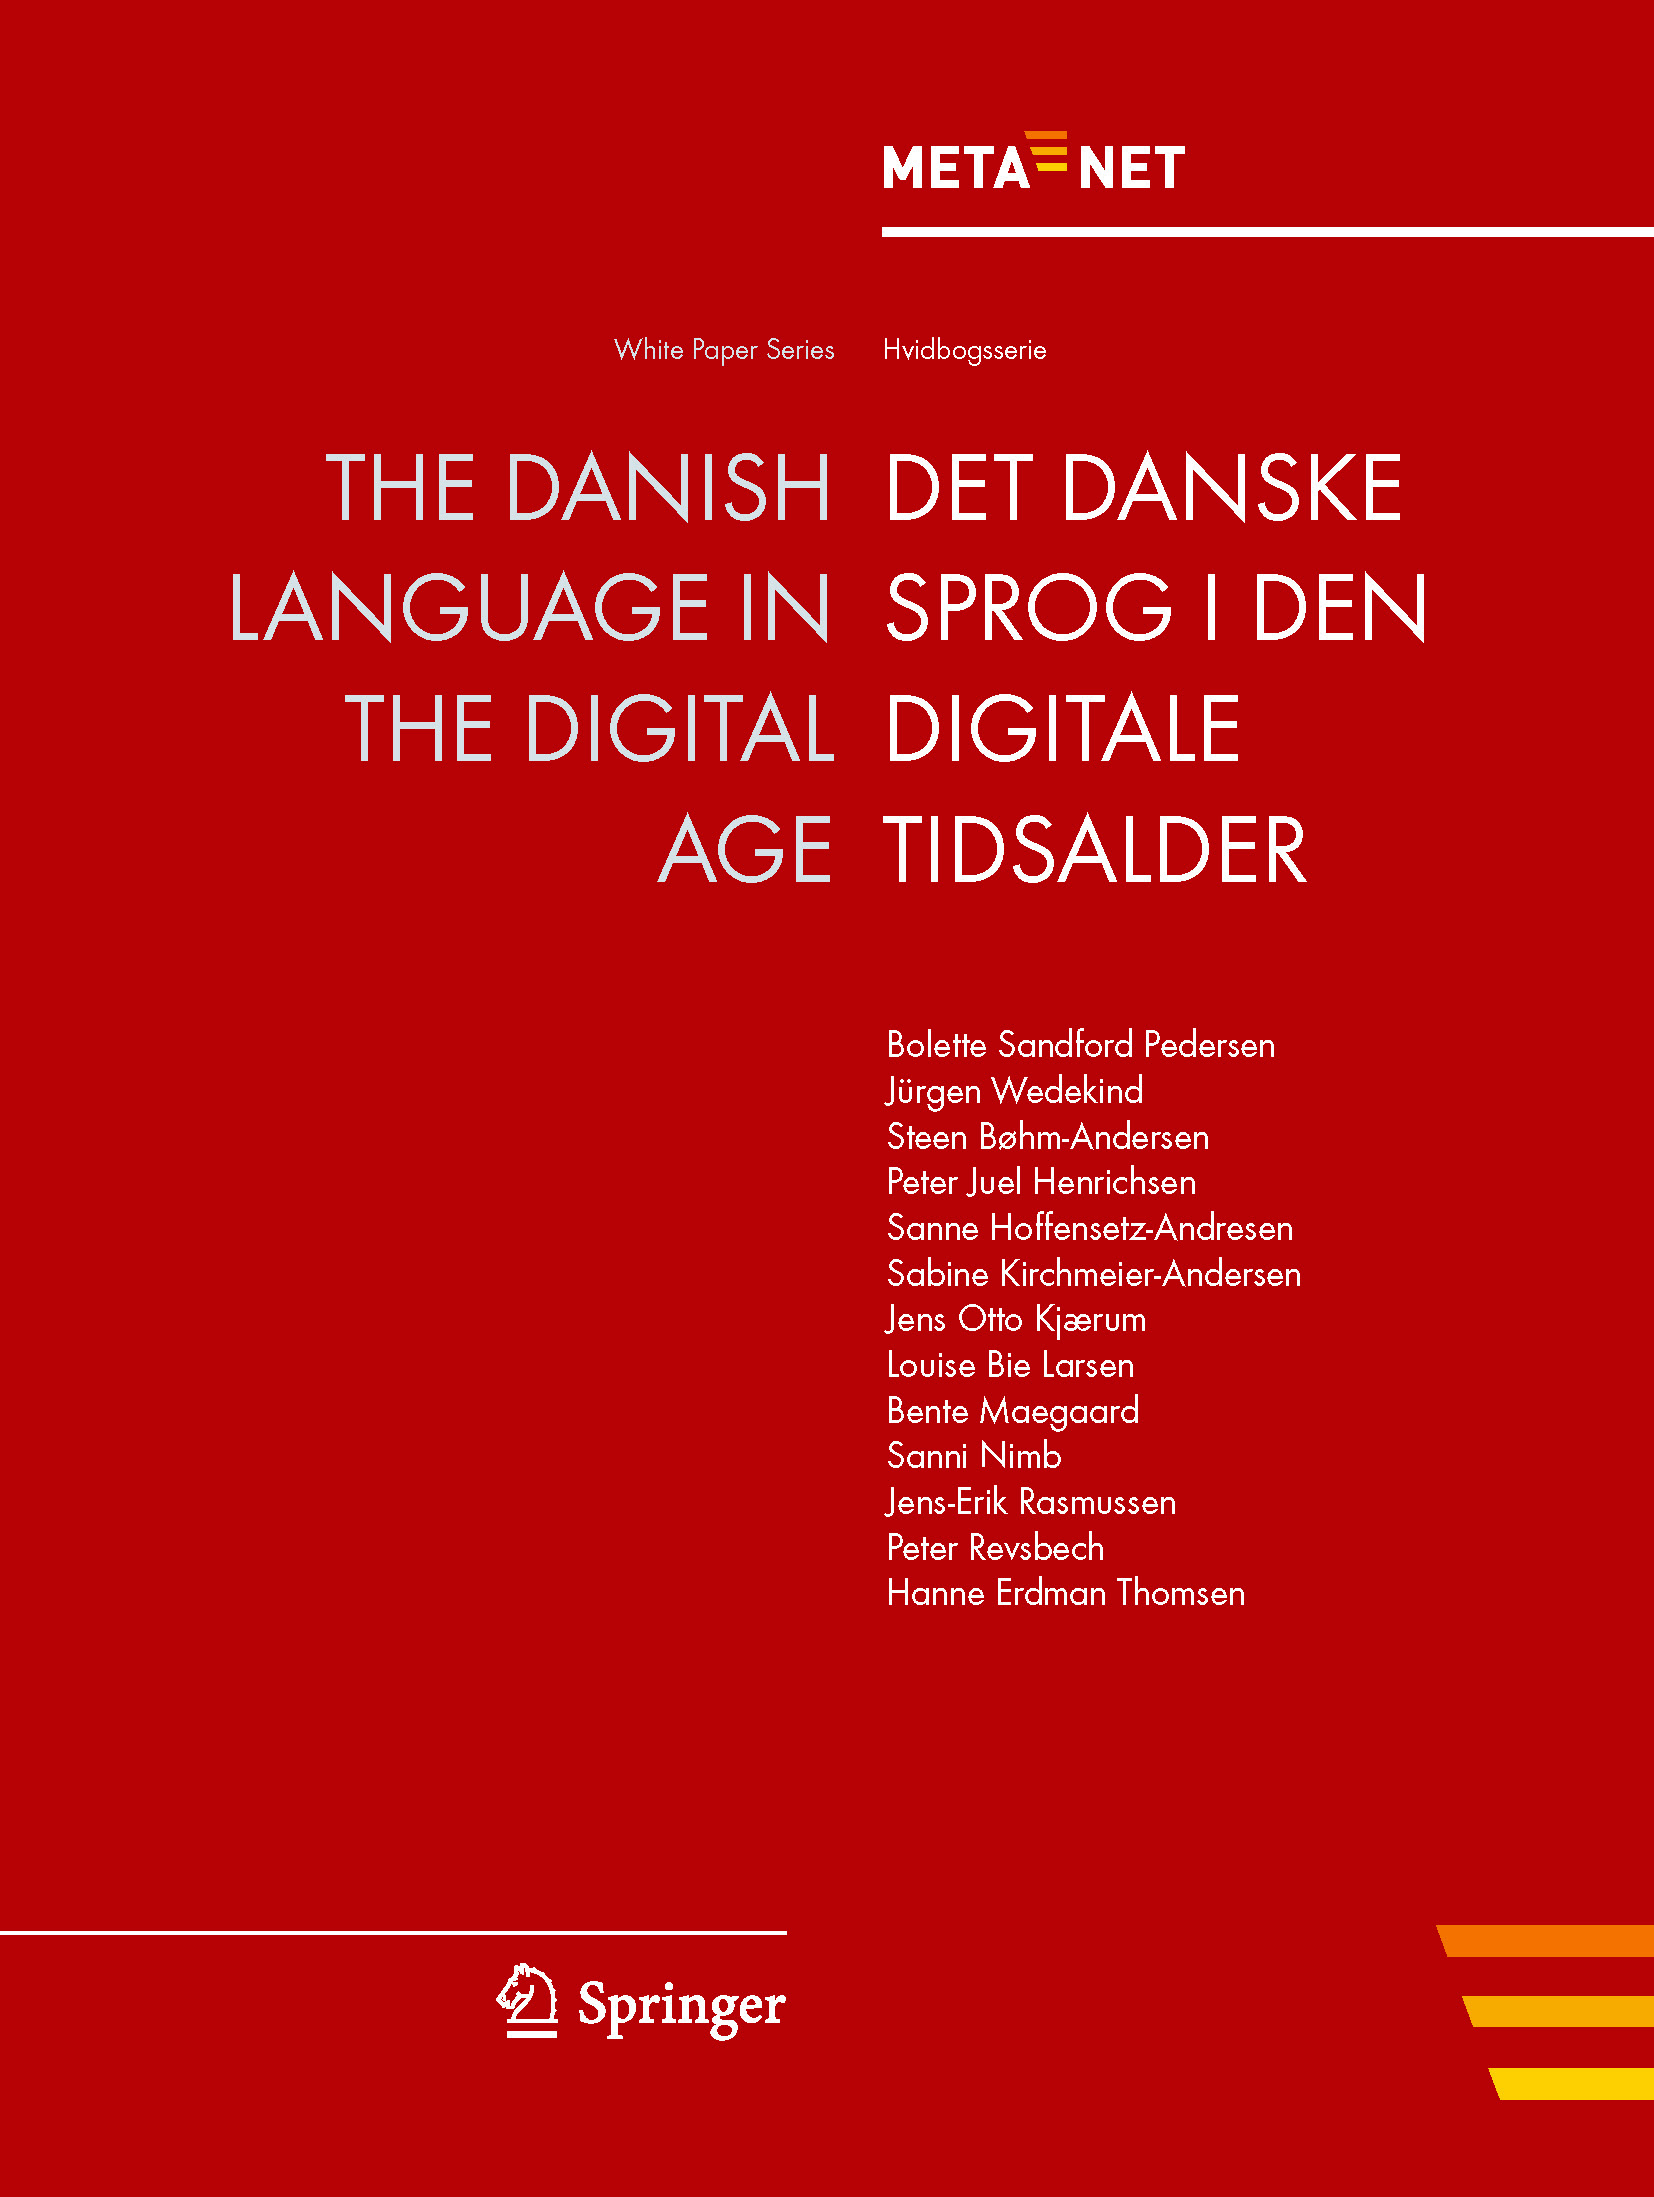 Cover of Danish whitepaper